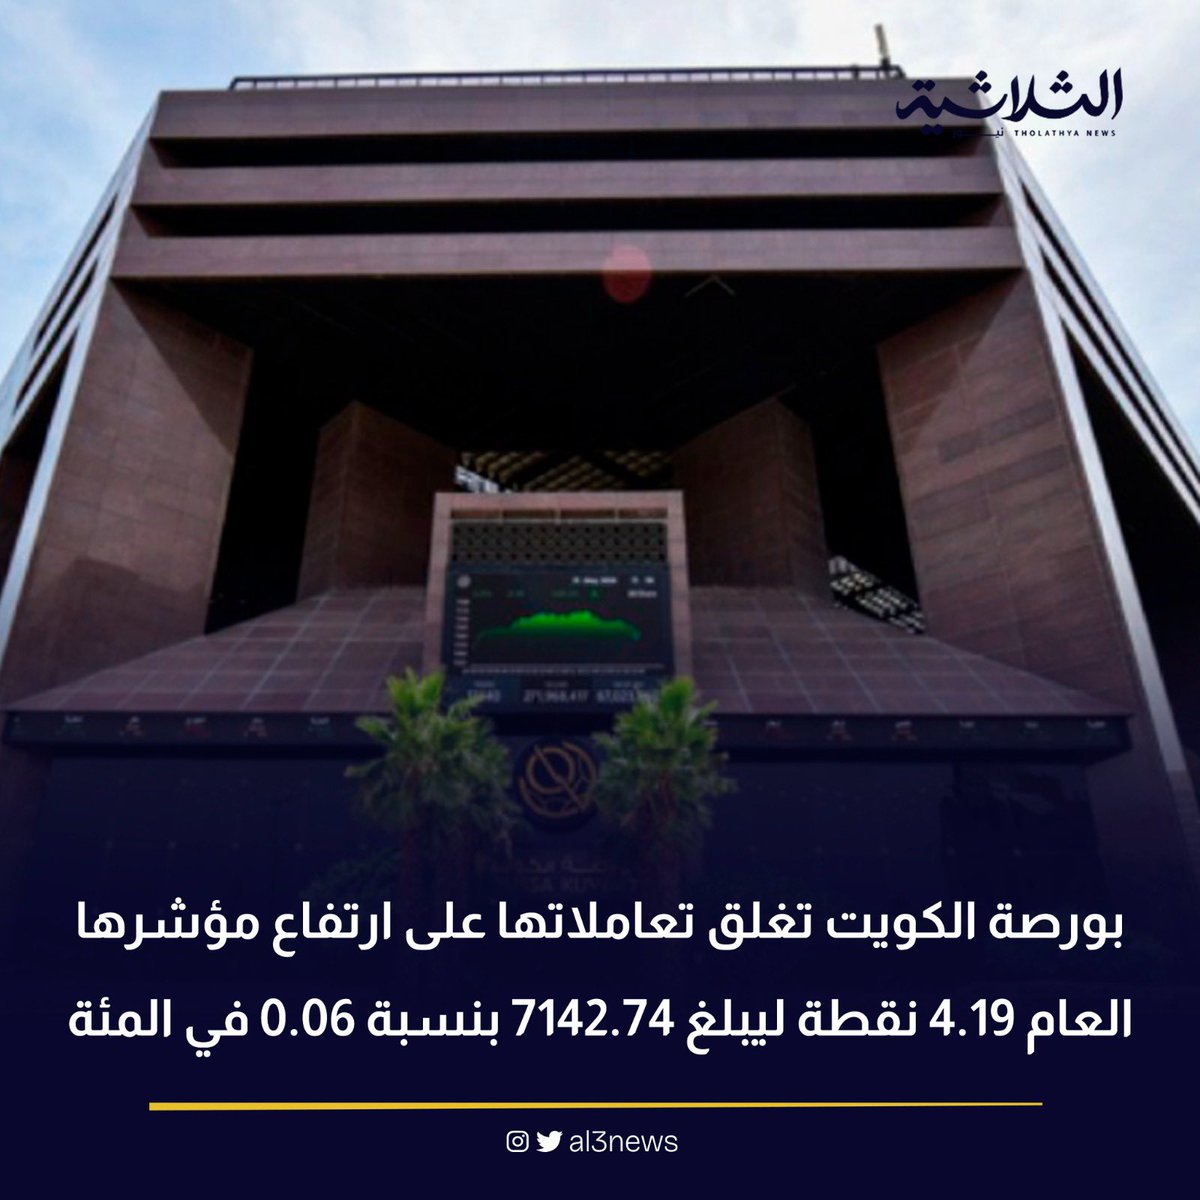 بورصة الكويت تغلق تعاملاتها على ارتفاع مؤشرها العام 4.19 نقطة ليبلغ 7142.74 بنسبة 0.06 في المئة